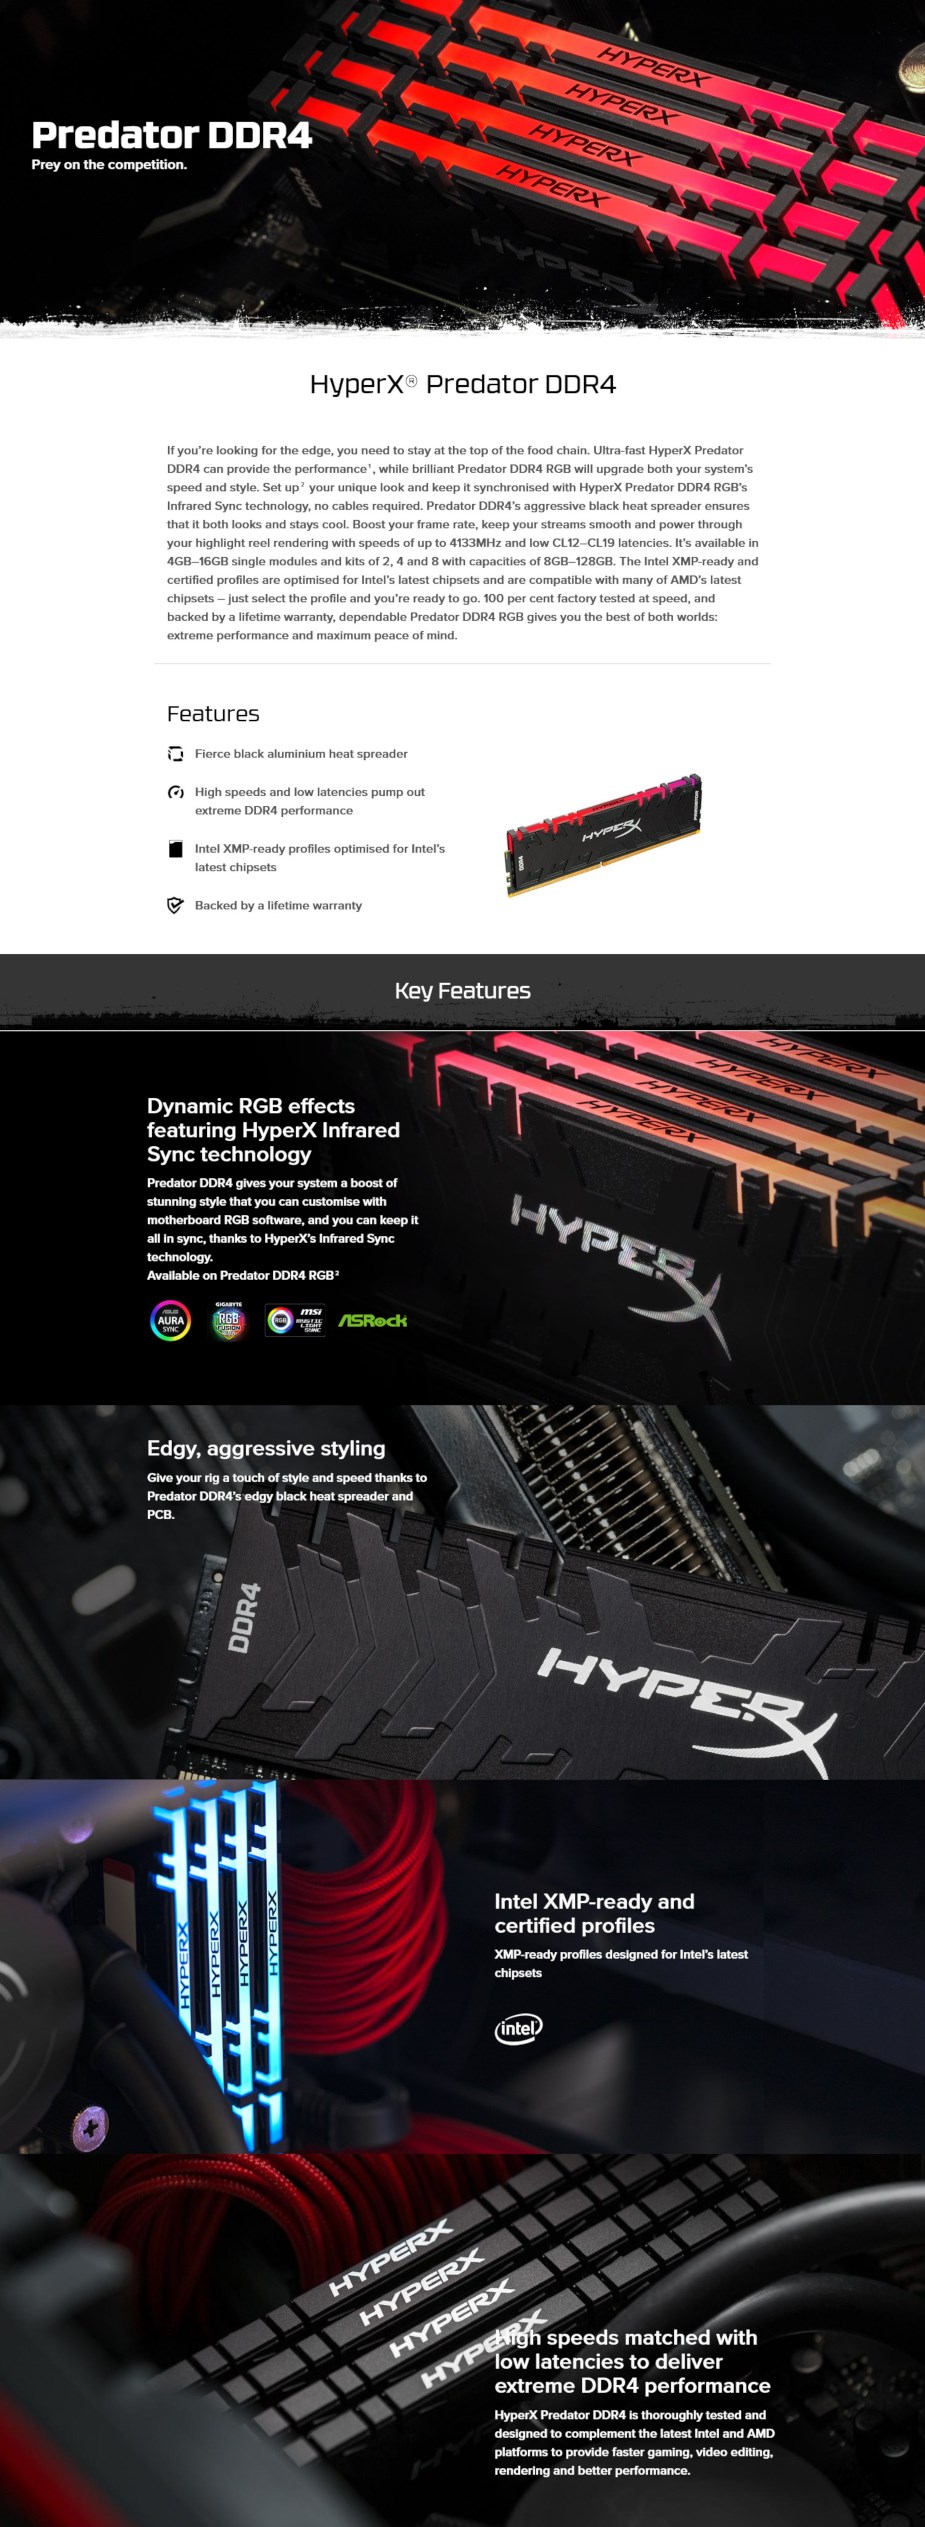 Kingston HyperX Predator RGB 16GB (2x 8GB) DDR4 3200MHz Memory